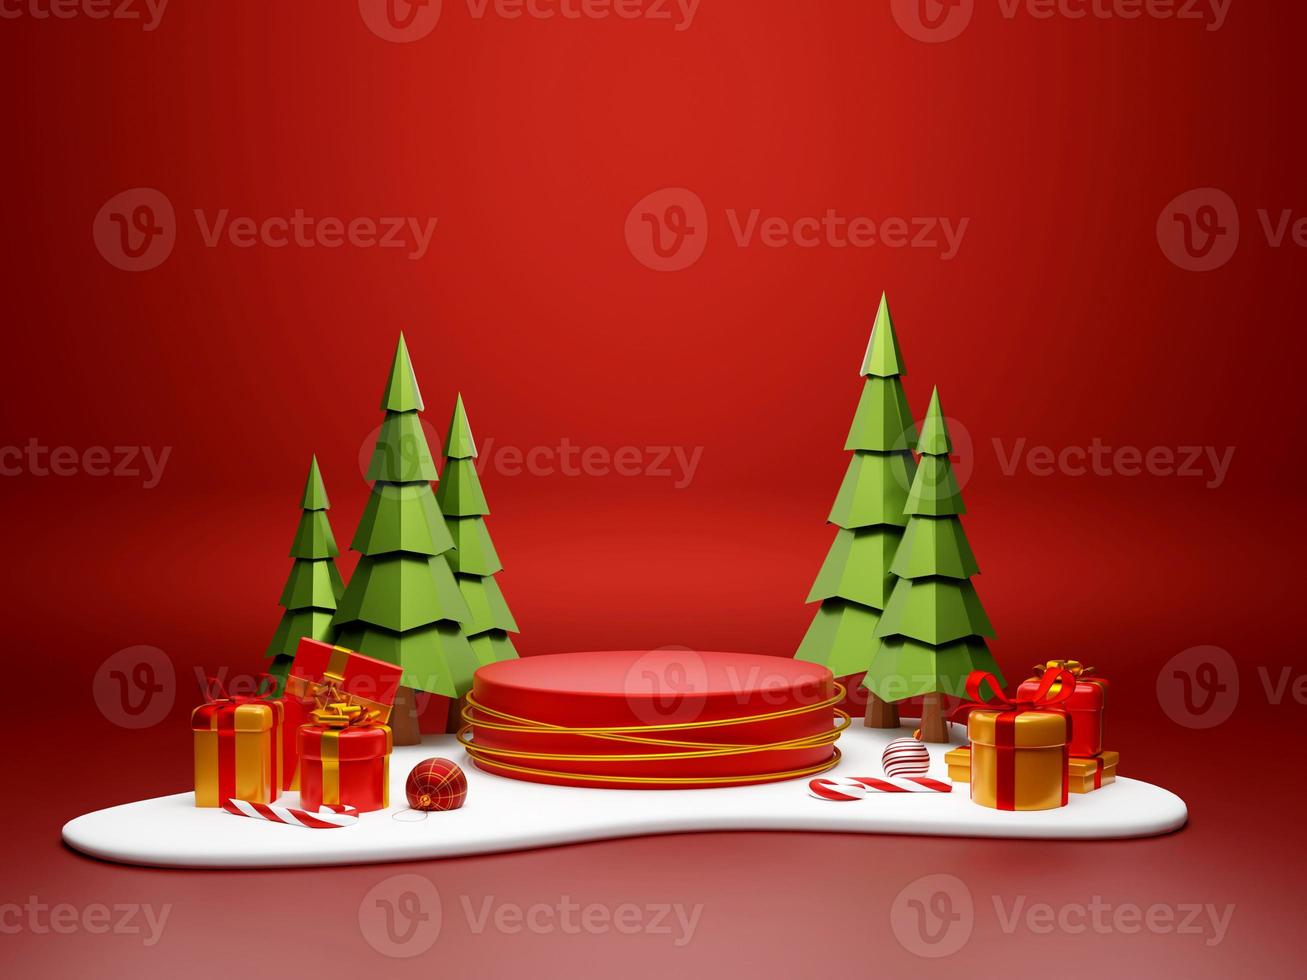 Weihnachtsthema des Podiums mit Weihnachtsgeschenk auf Schneeboden, 3D-Darstellung foto